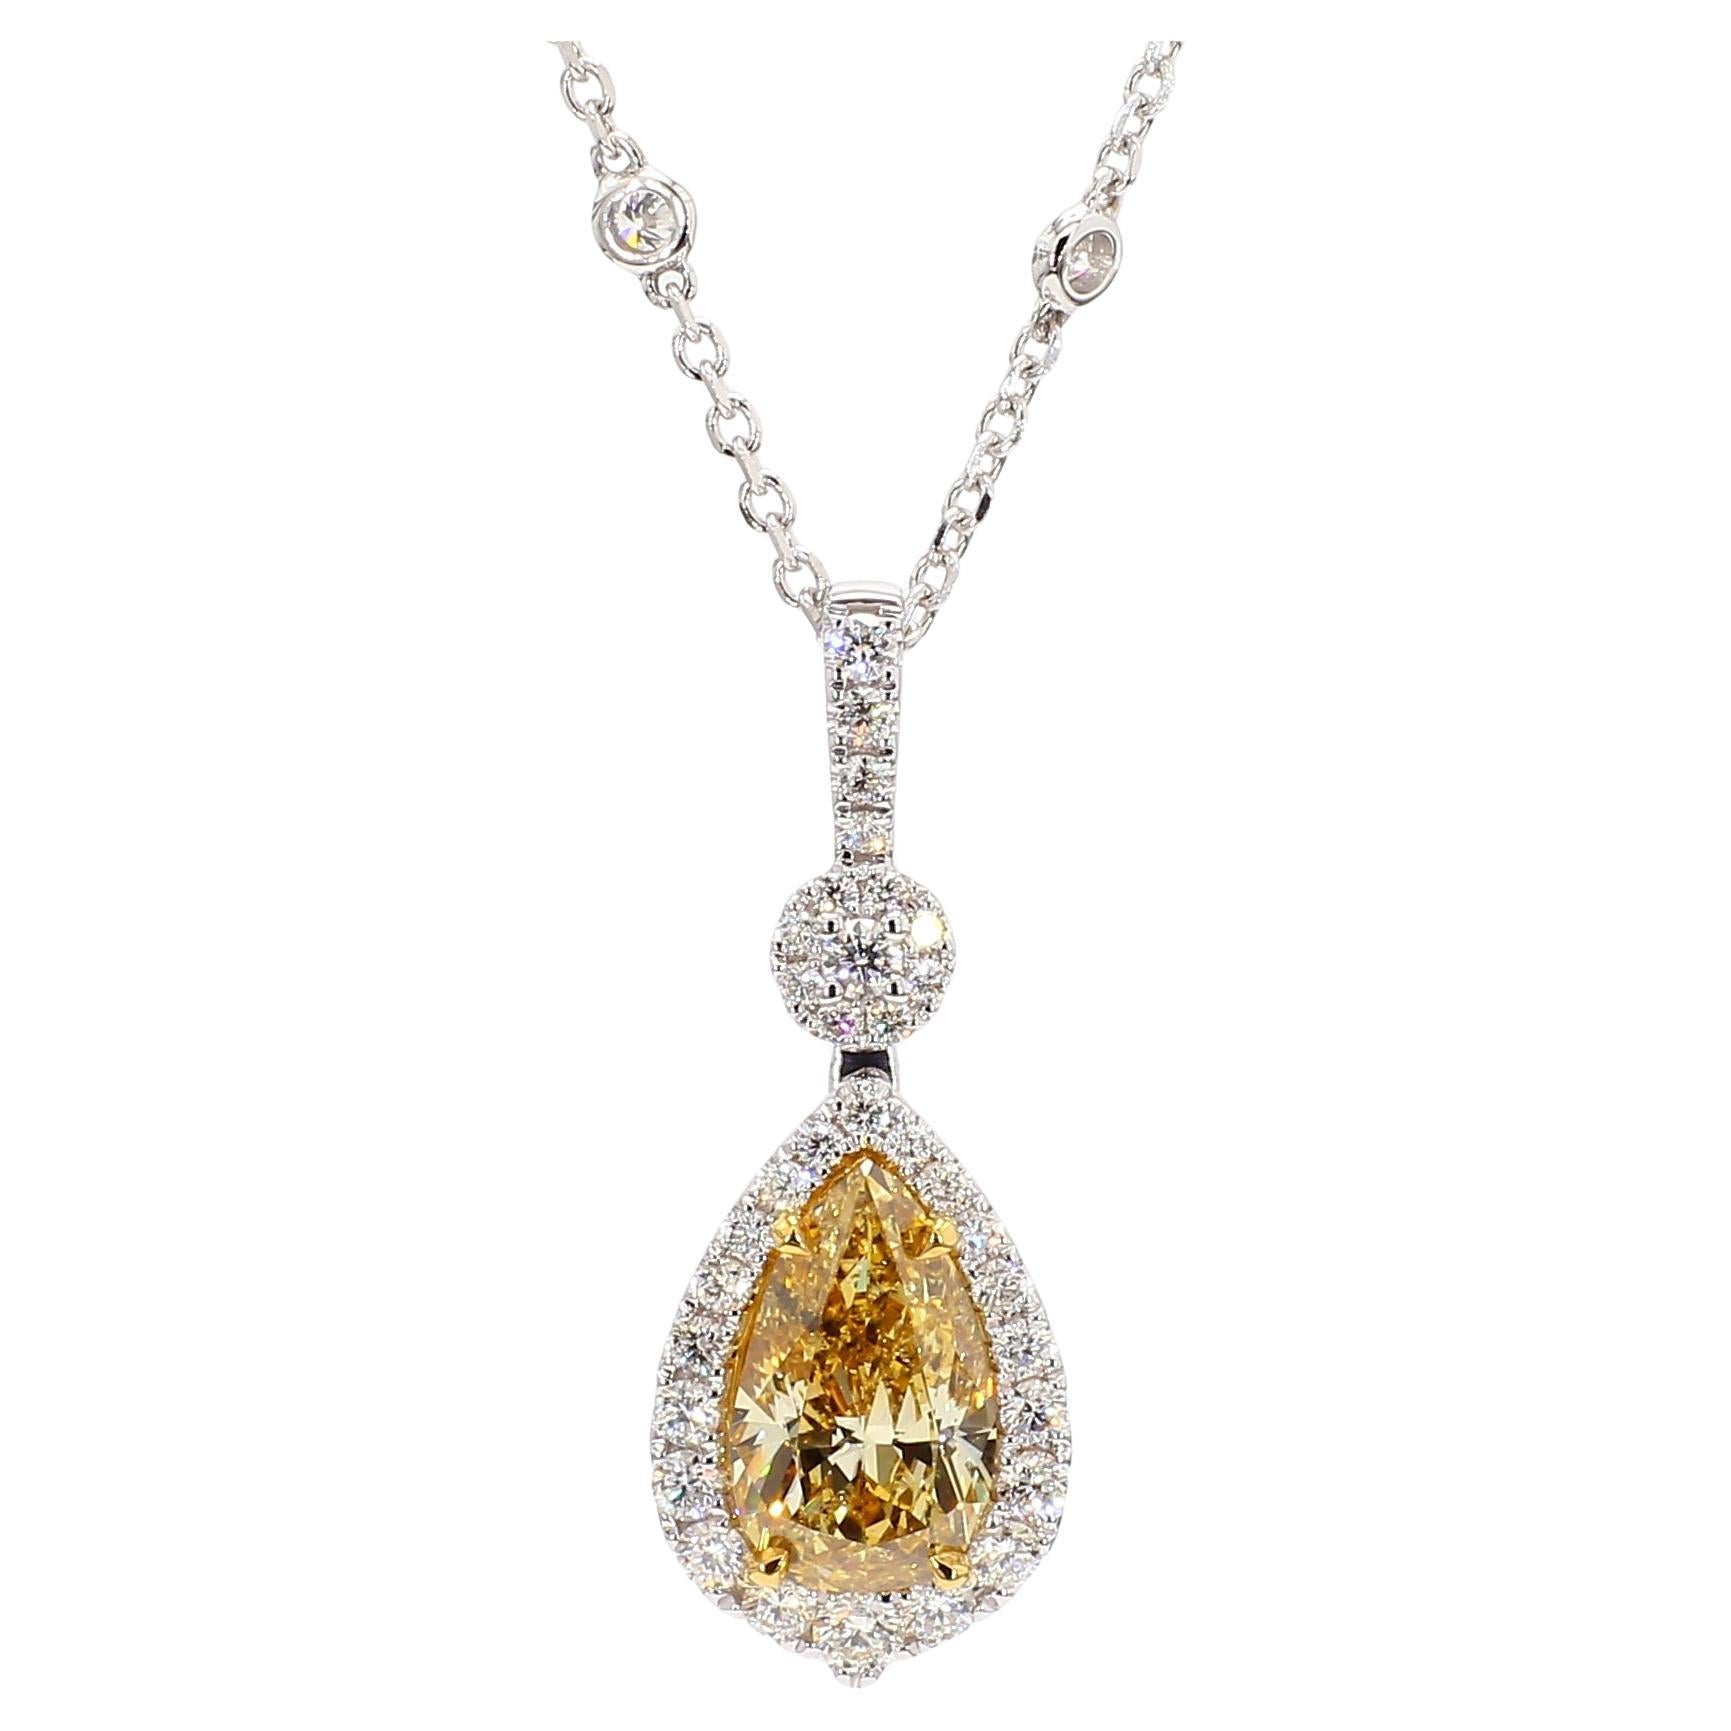 GIA Certified Natural Yellow Pear Diamond 2.69 Carat TW Gold Drop Pendant